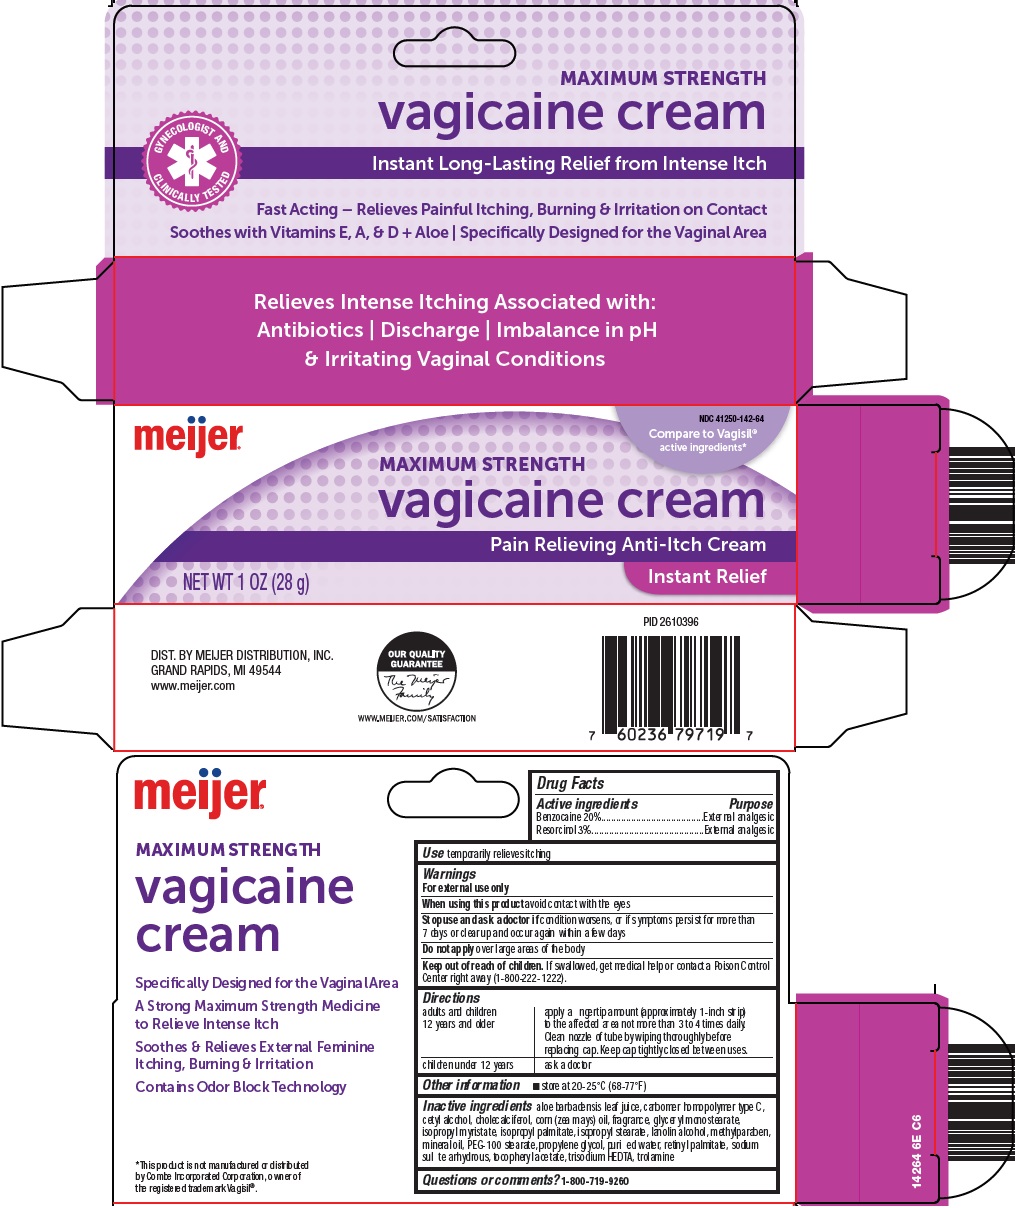 vagicaine cream image